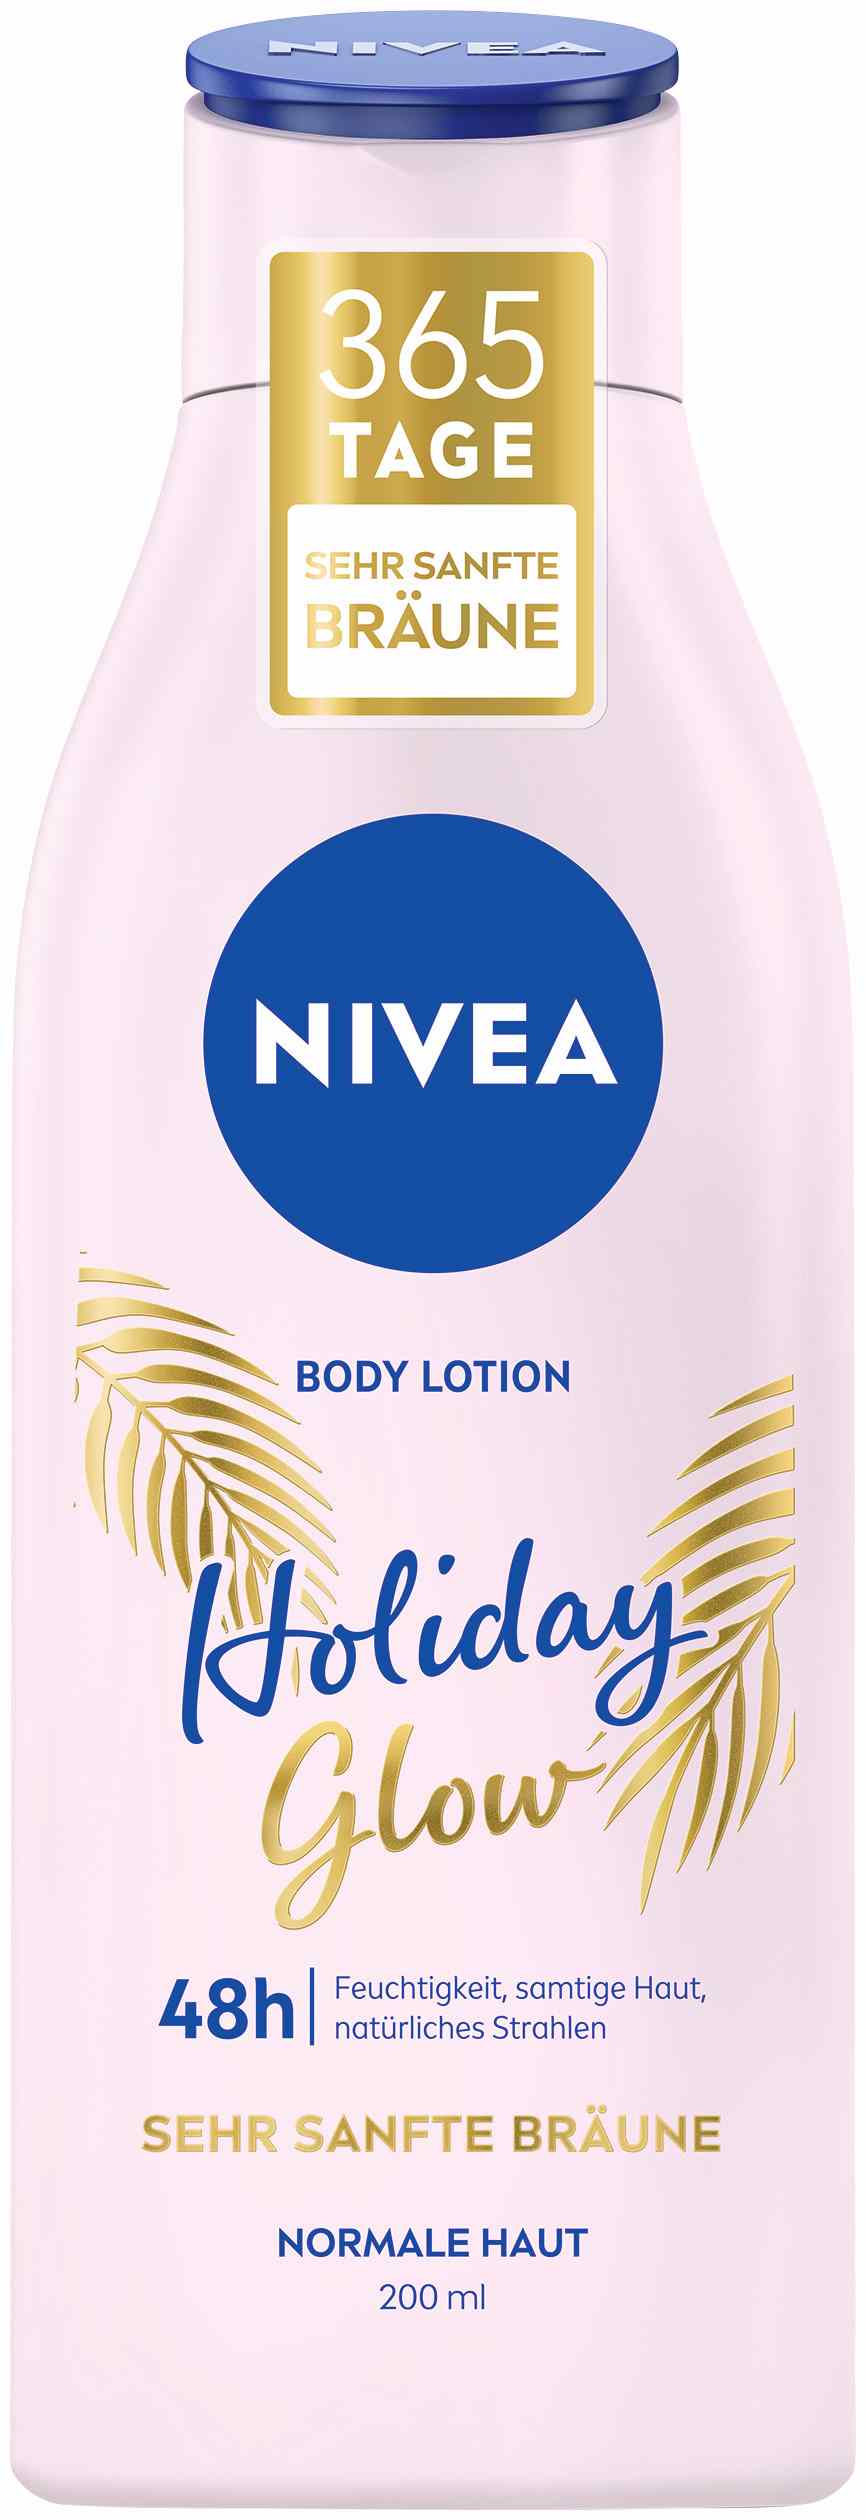 Za čvrstu, zdravu i prirodno preplanulu kožu 365 dana u godini  prepusti se NIVEA Q10 losionima za telo